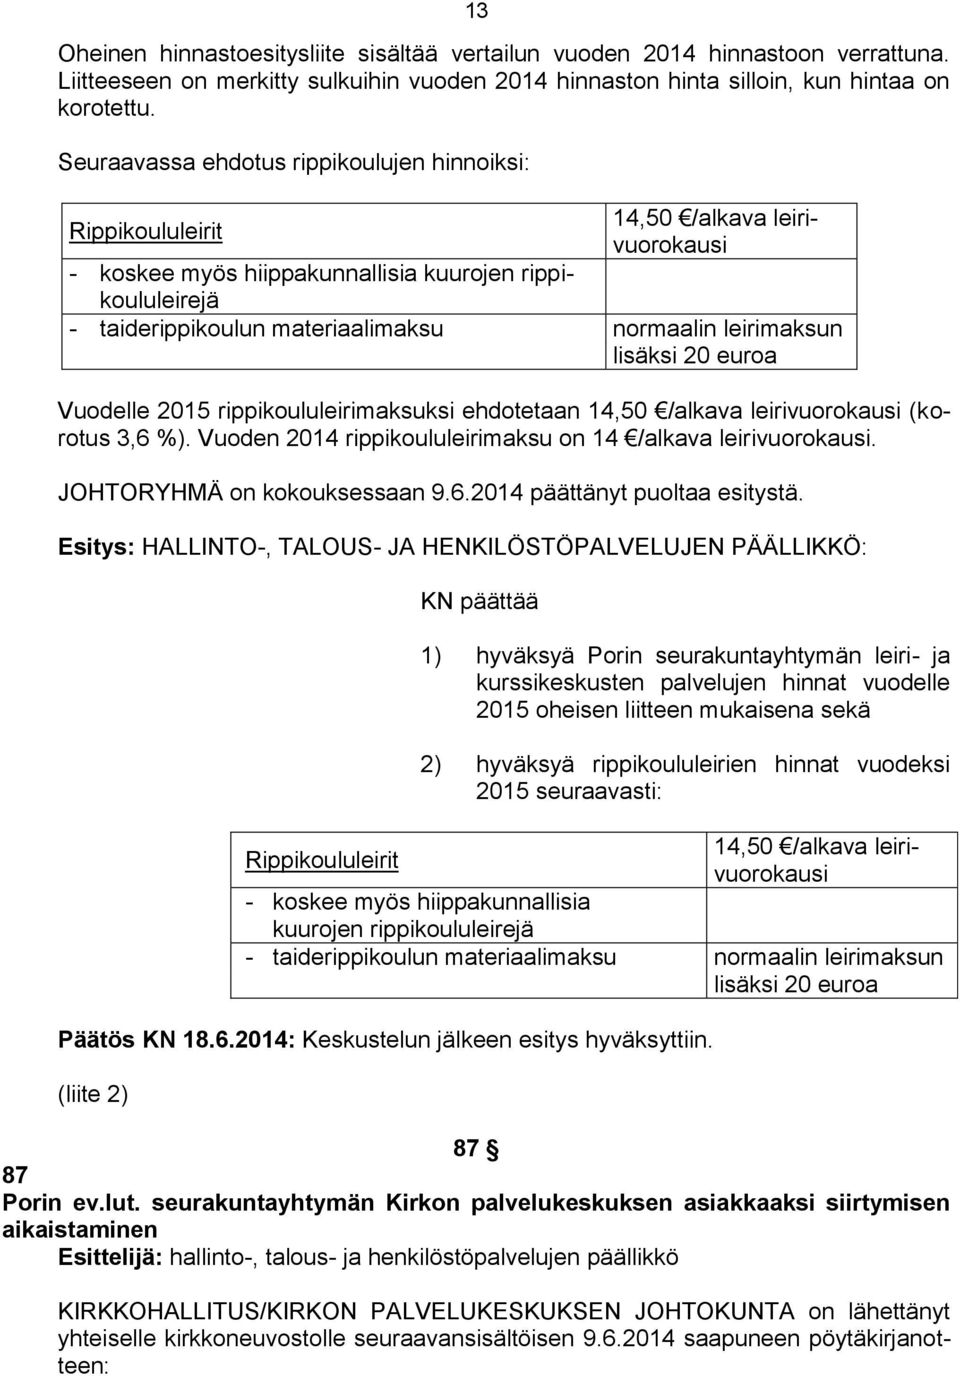 leirimaksun lisäksi 20 euroa Vuodelle 2015 rippikoululeirimaksuksi ehdotetaan 14,50 /alkava leirivuorokausi (korotus 3,6 %). Vuoden 2014 rippikoululeirimaksu on 14 /alkava leirivuorokausi.